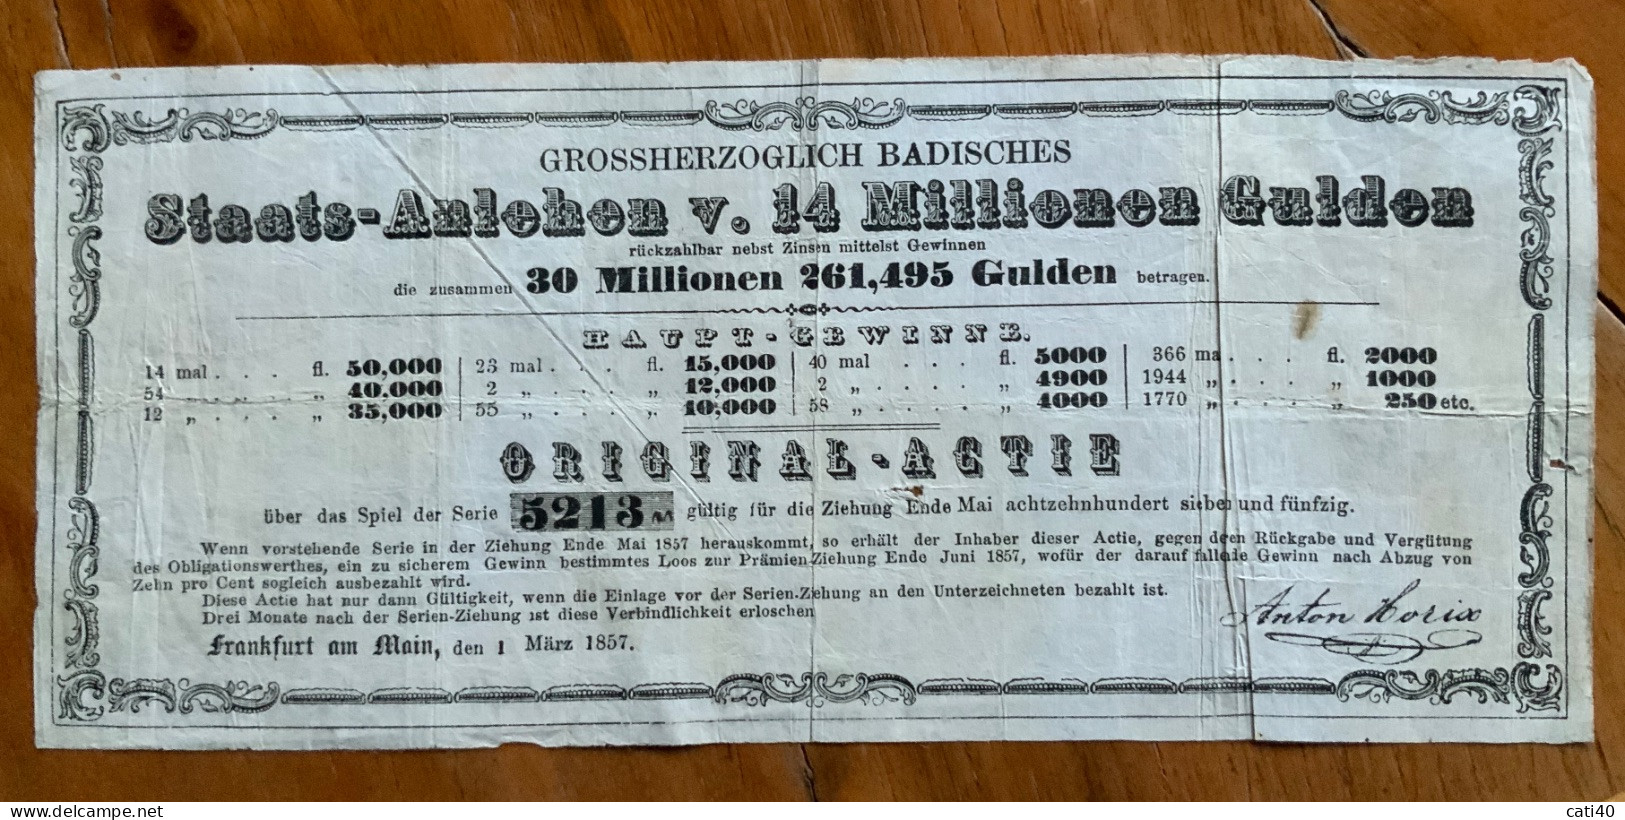 FRANKFURT AM MAIN 1 MARZ 1857 - GROSSHERZOGLICH BADISCHES -  STAATS - ANLEHEN ORIGINAL - ACTIE - 14 MILIONEN GULDEN - Transportmiddelen